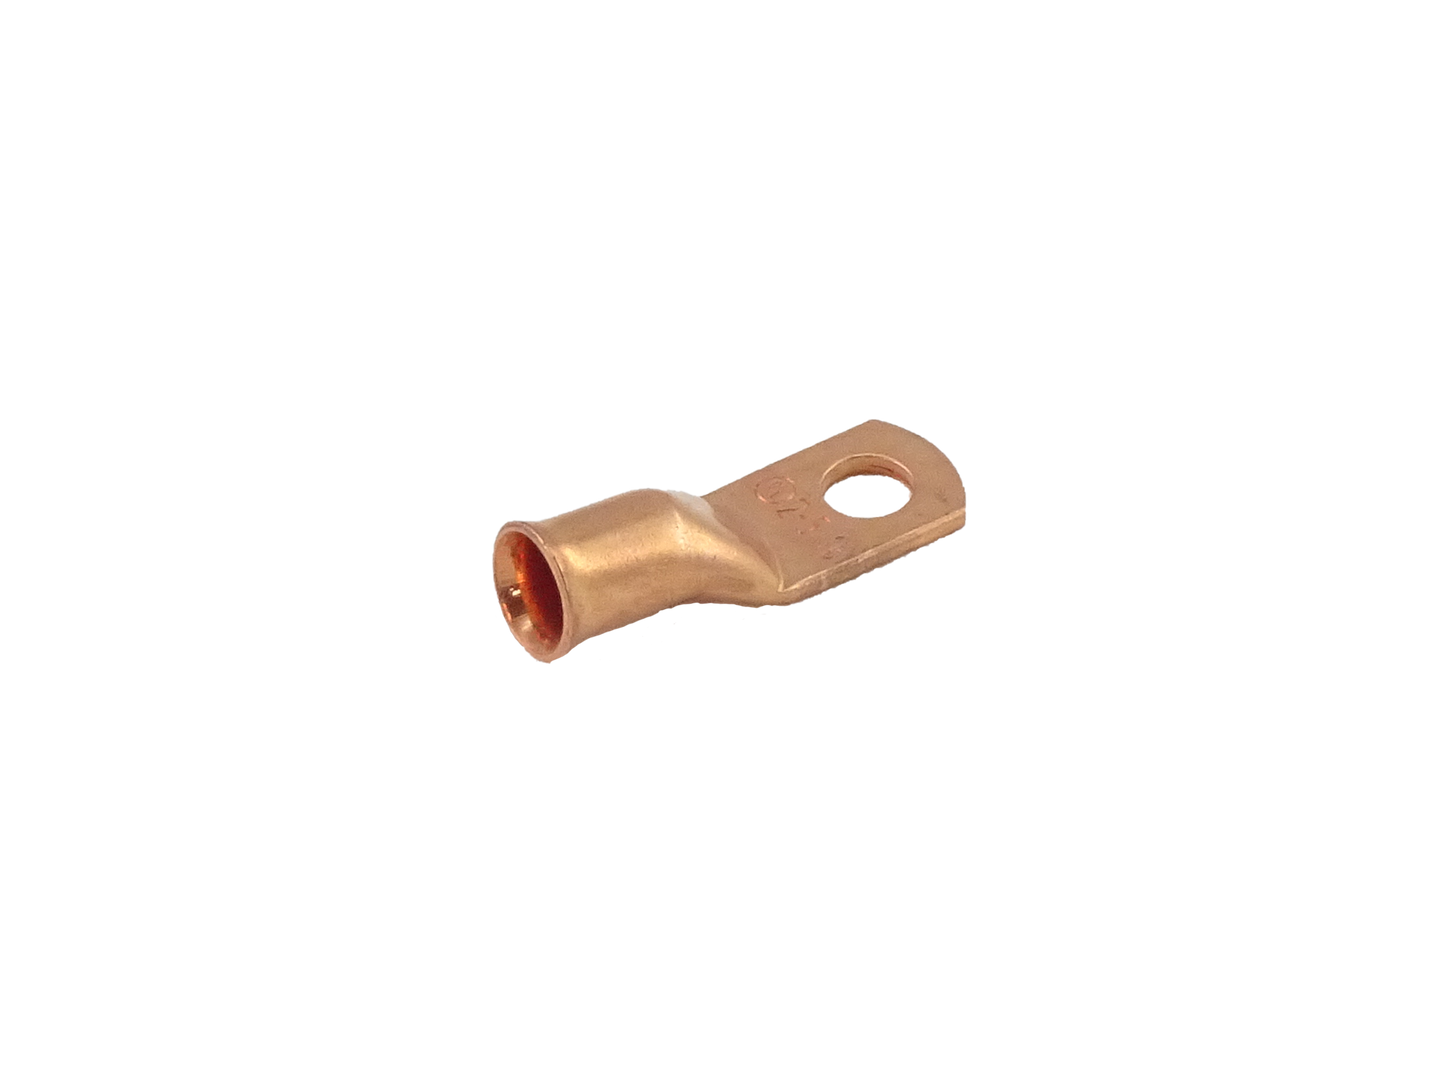 Copper Lug